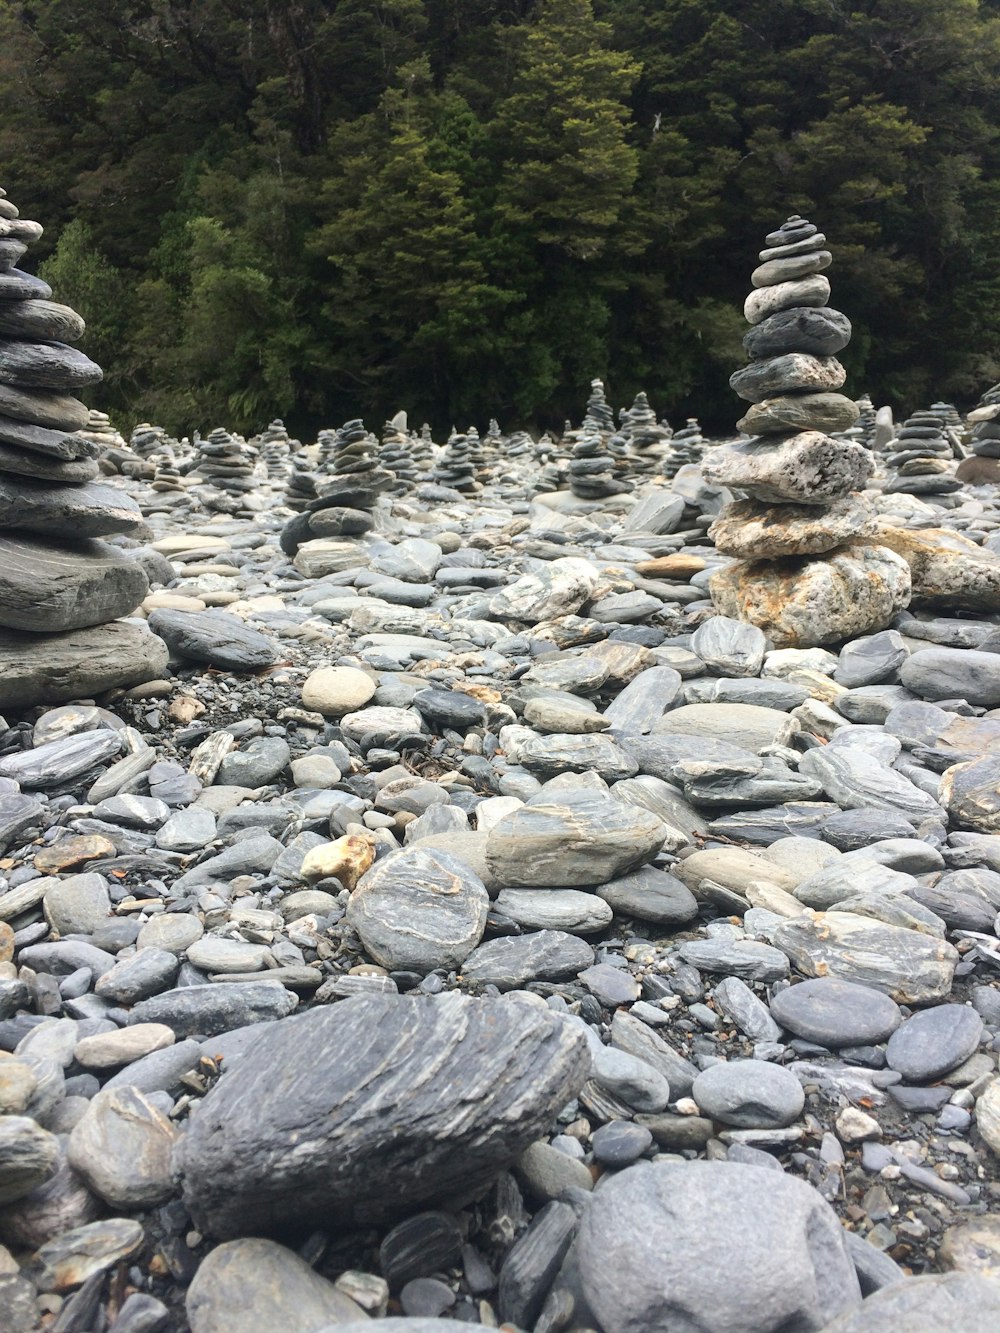 pedras cinzentas e pretas no rio durante o dia